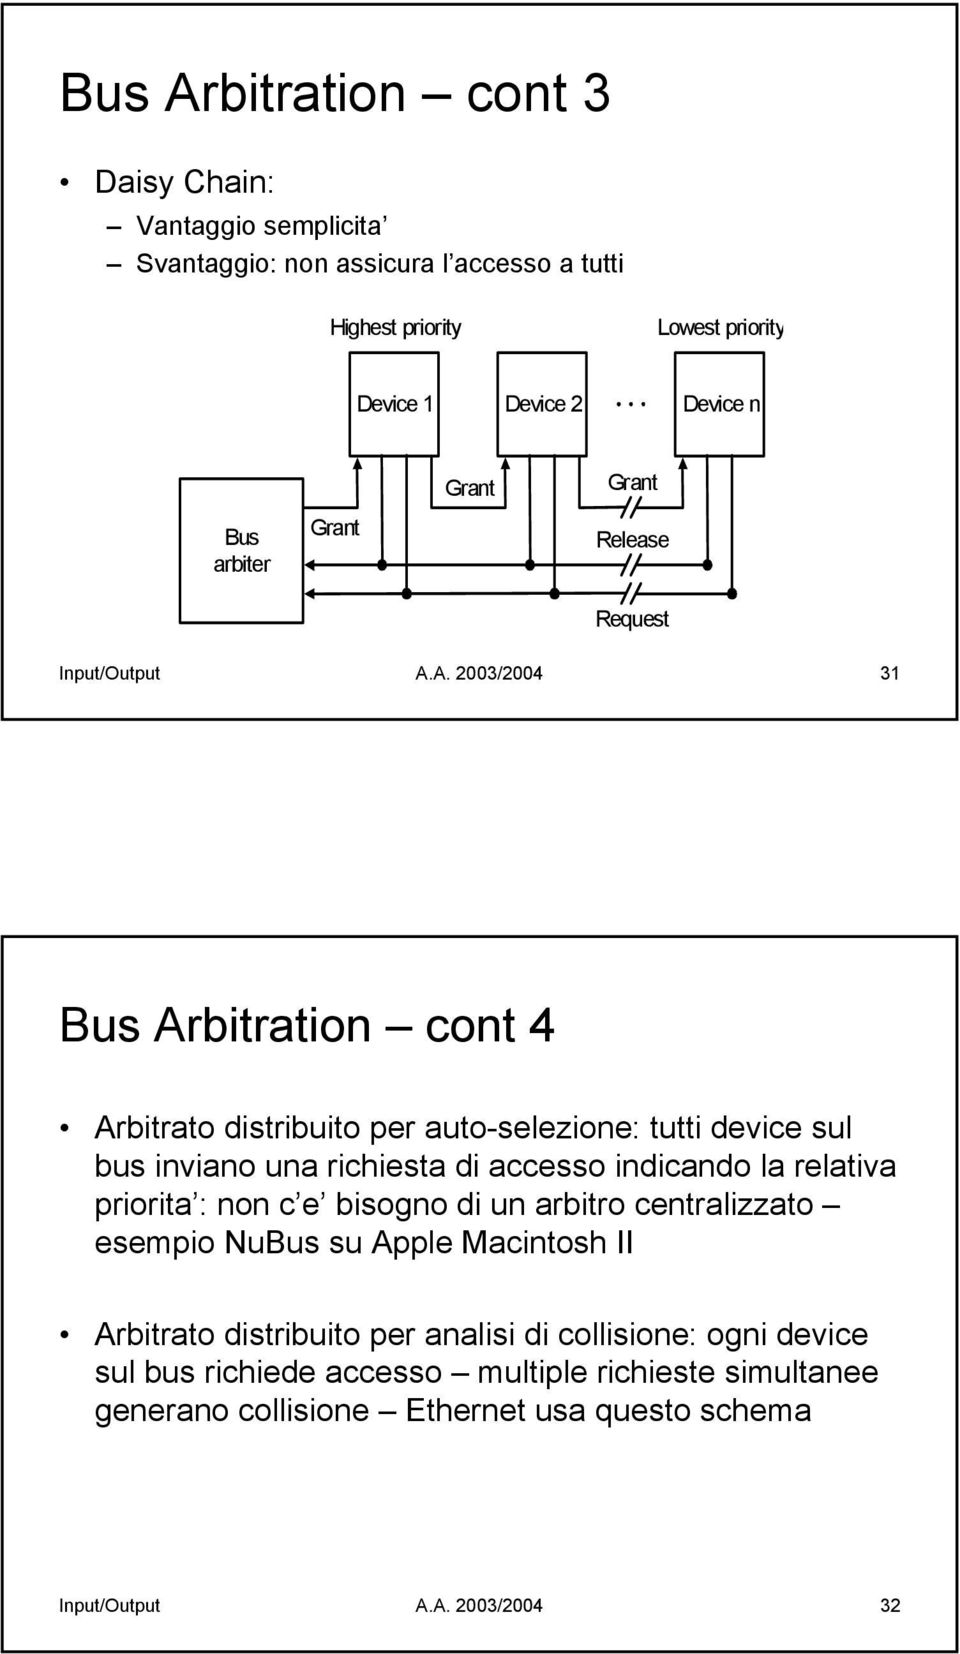 A. 2003/2004 31 Bus Arbitration cont 4 Arbitrato distribuito per auto-selezione: tutti device sul bus inviano una richiesta di accesso indicando la relativa priorita